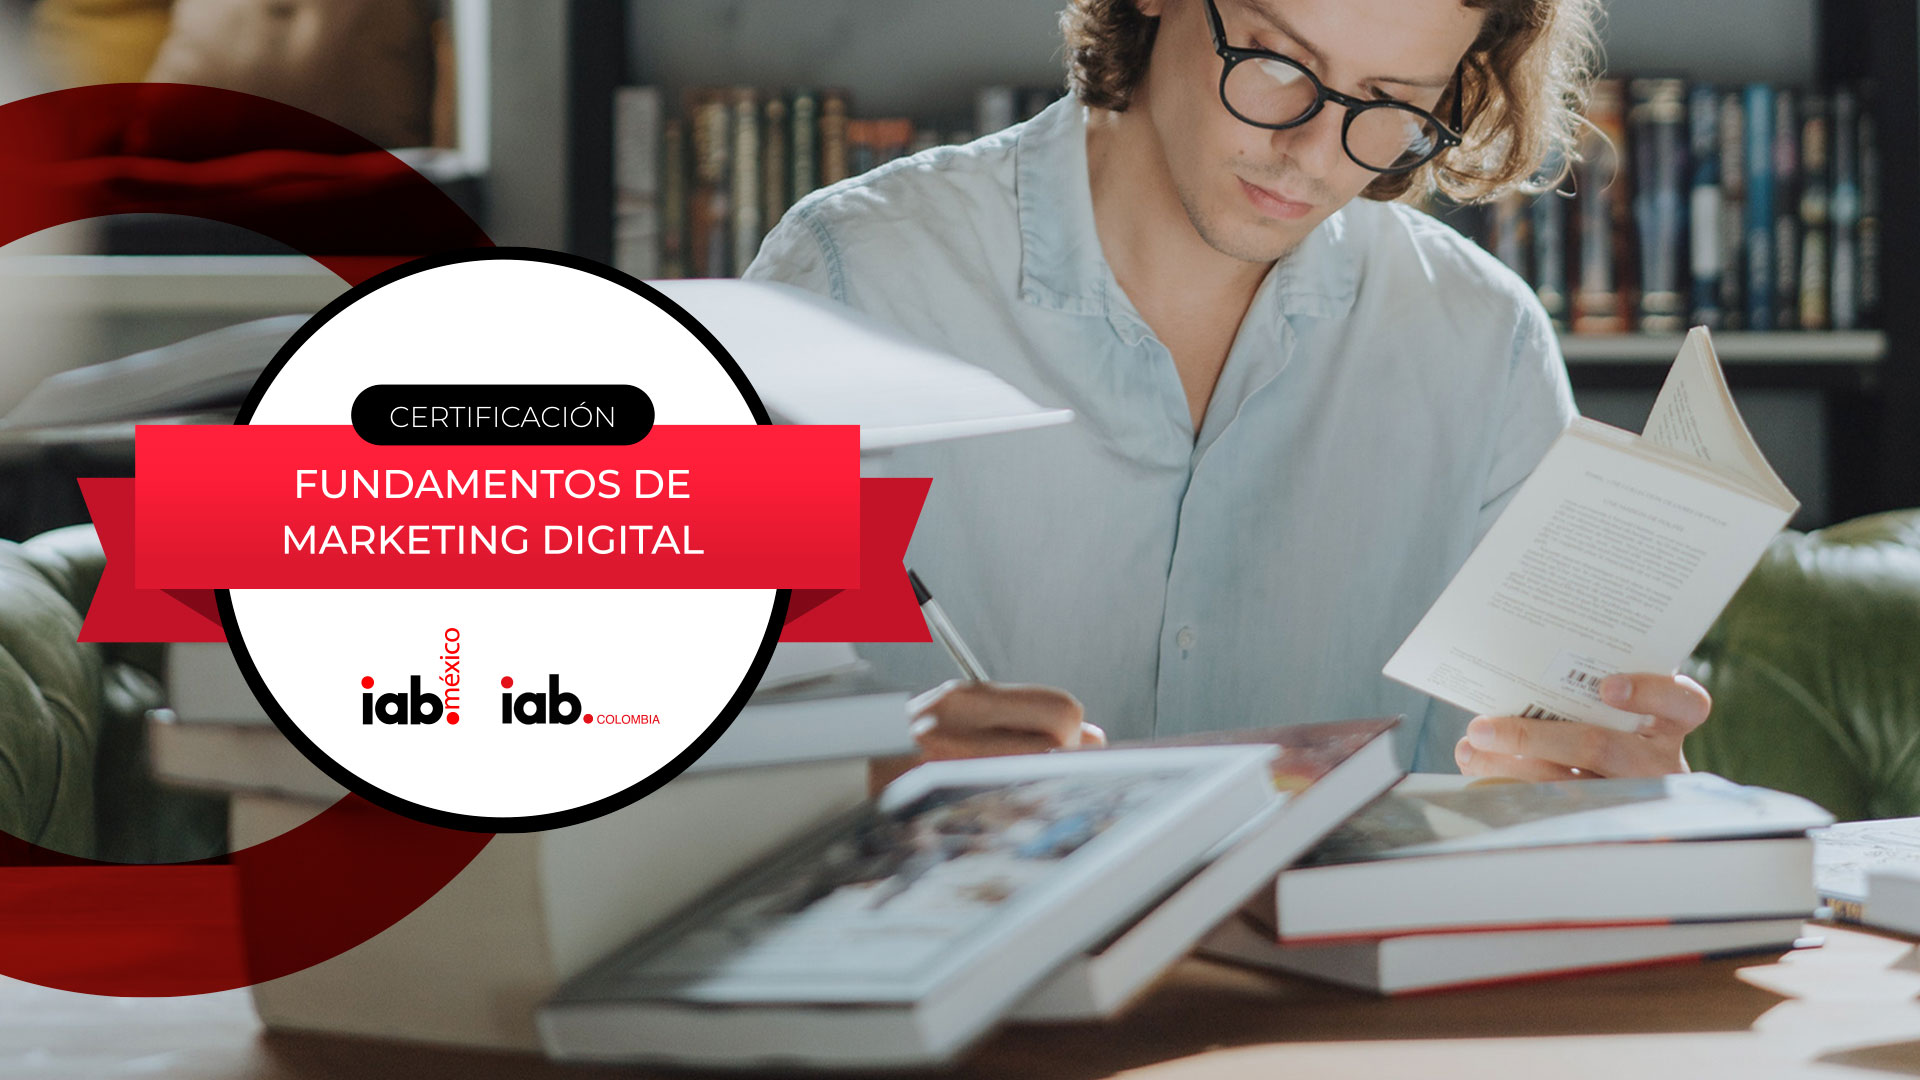 IAB México y Colombia lanzan la primera Certificación para profesionales del Marketing Digital en español.